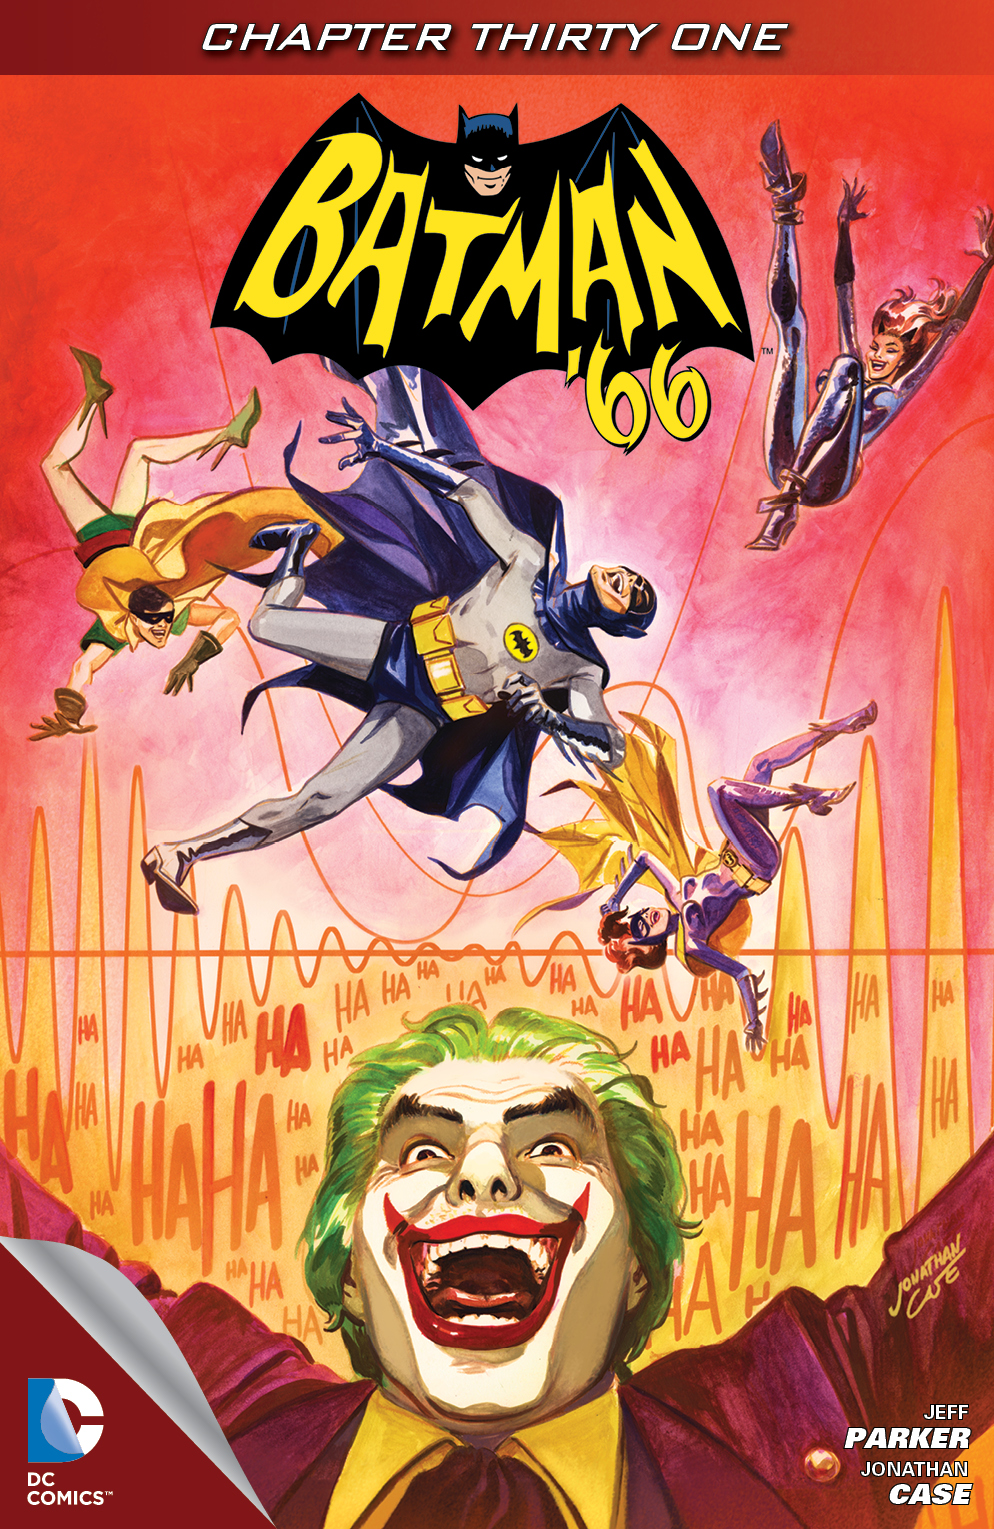 Batman '66 #31 preview images